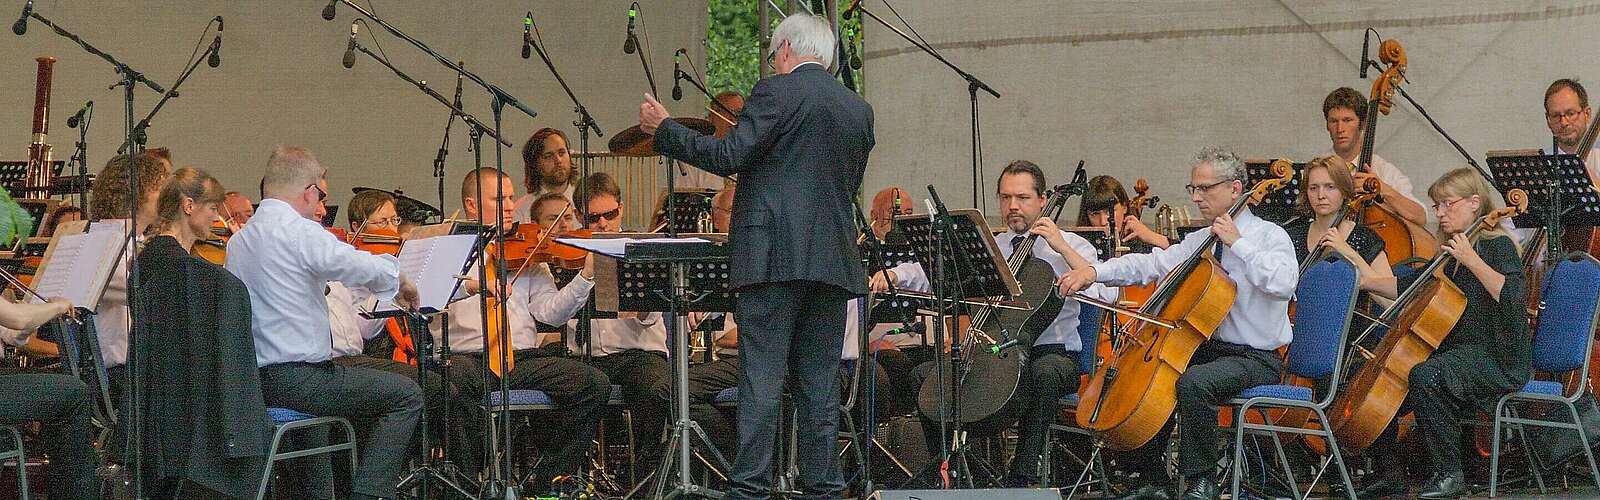 Ein klassisches Orchester auf einer Freilichtbühne,
        
    

        Foto: Fotograf / Lizenz - Media Import/Steffen Lehmann